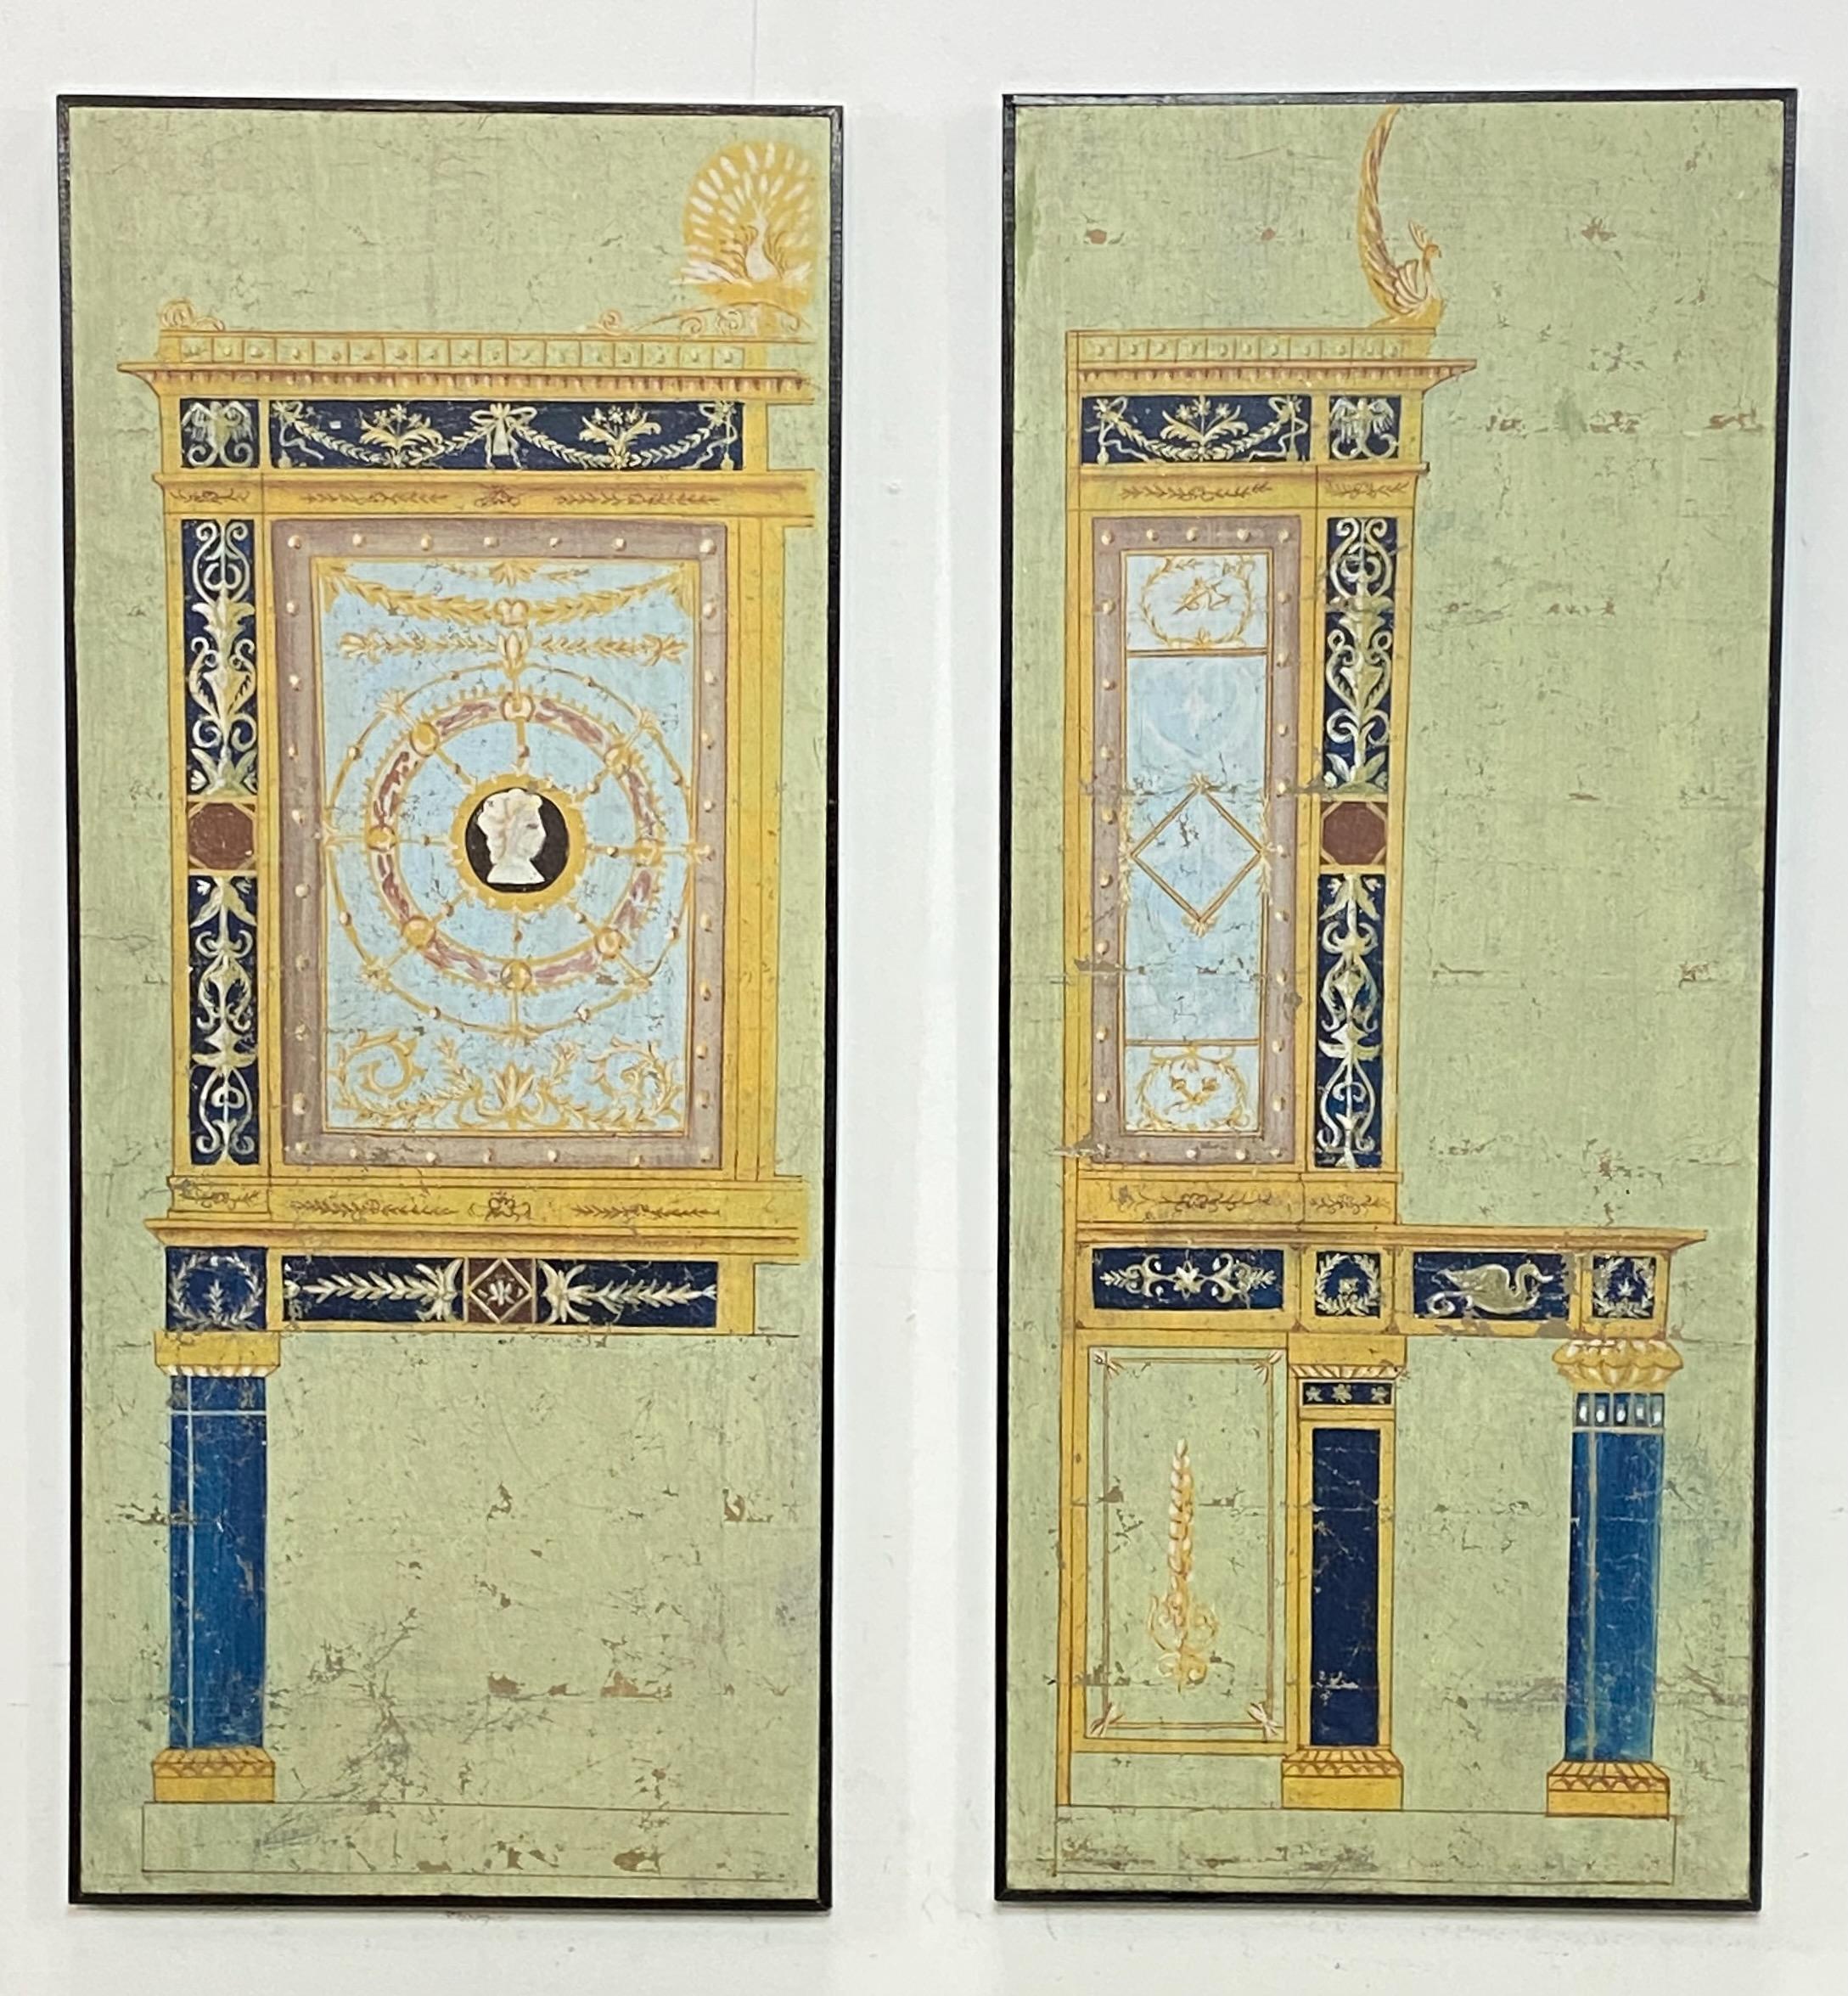 Paire d'aquarelles gouachées (à base de craie colorée) sur papier, peintes à la main, dans le style de la période impériale, provenant de Pompéi (Italie). 
Elles font probablement partie d'un écran décoratif ou d'une peinture murale de la fin du 18e